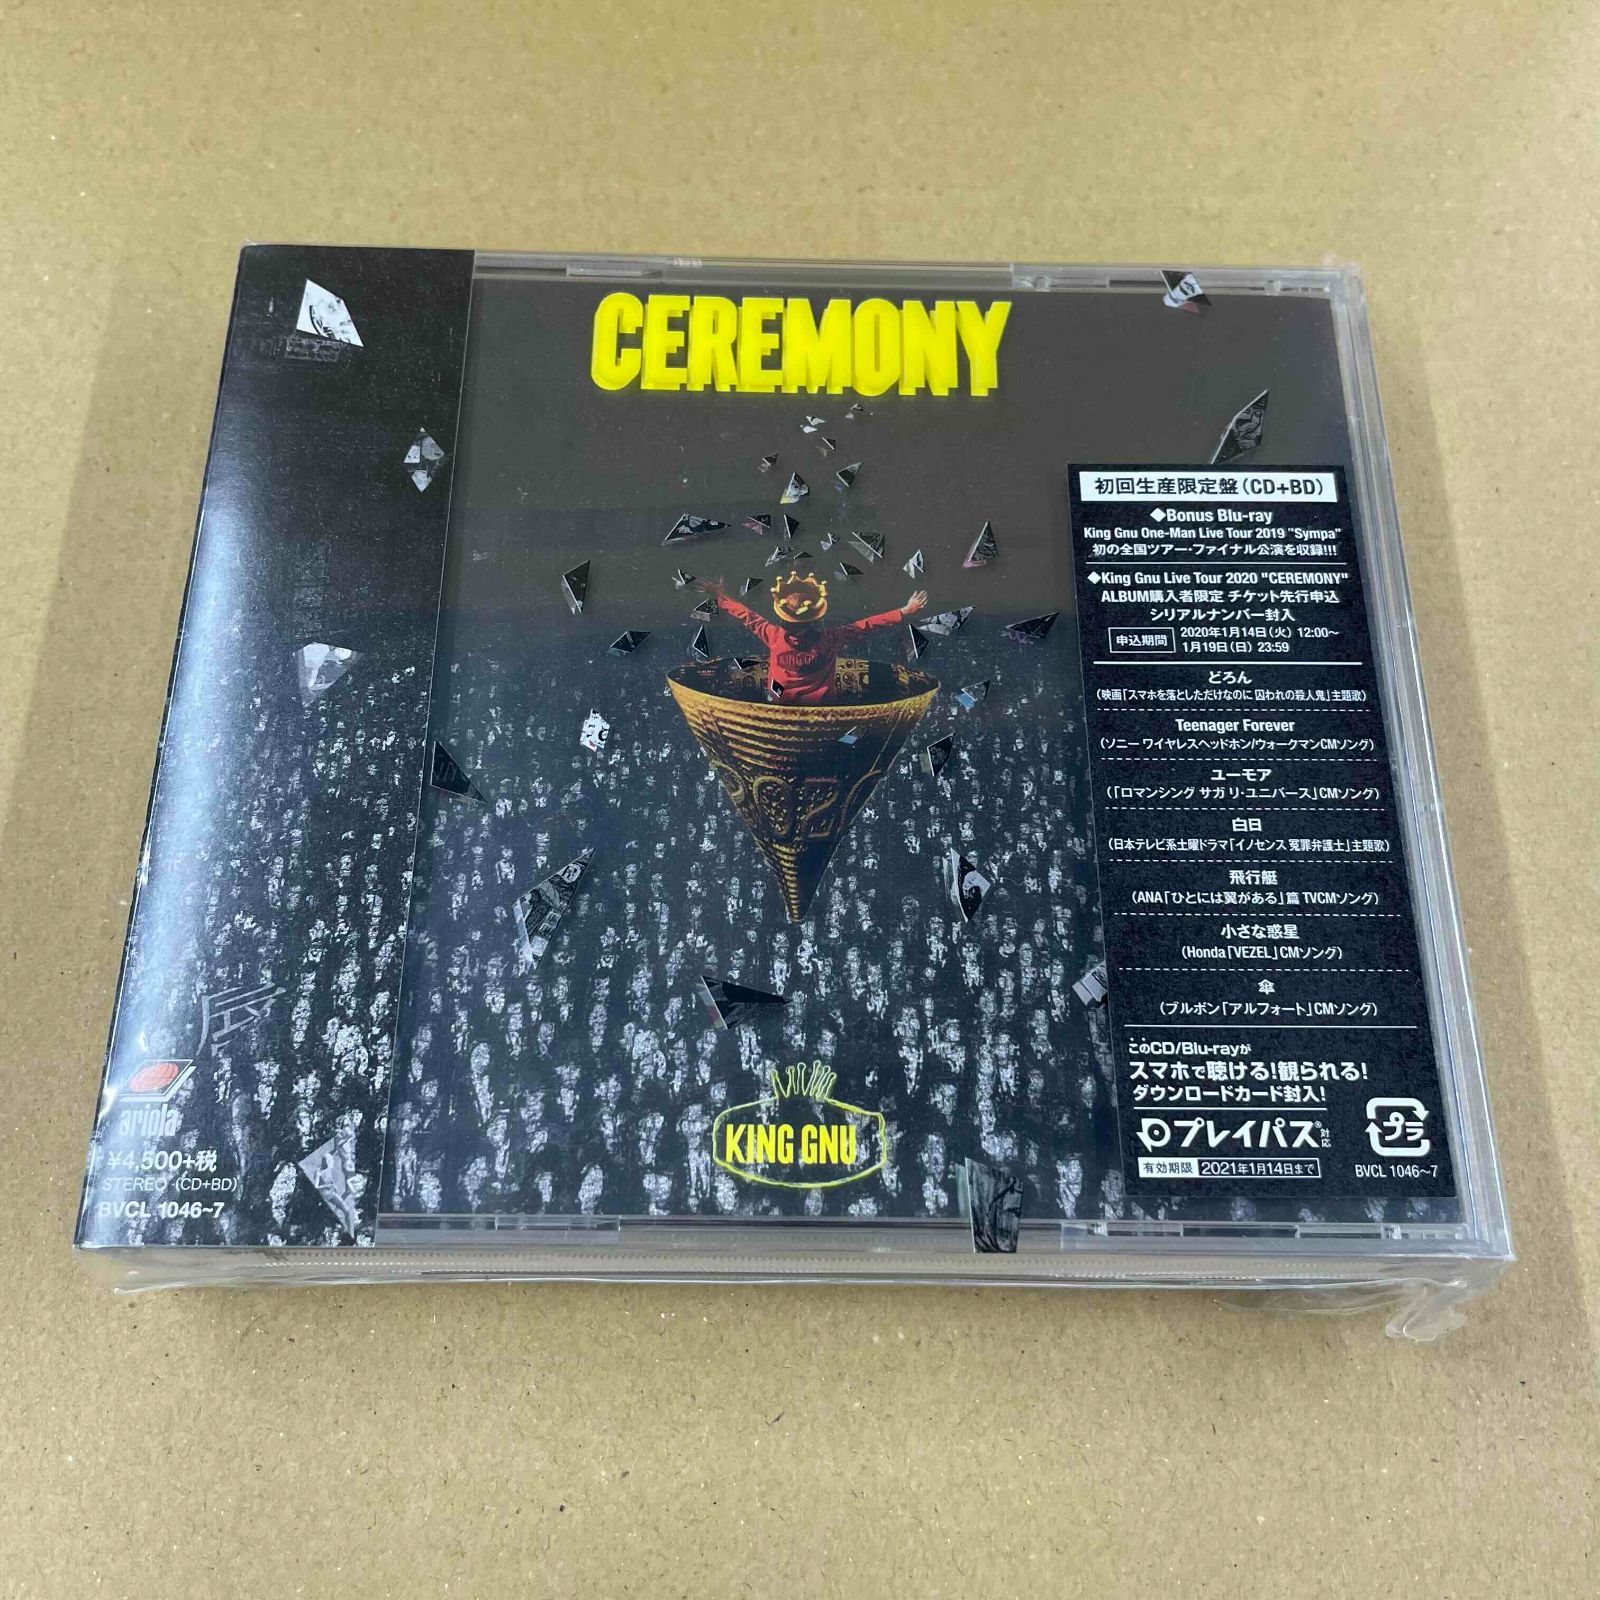 King Gnu/CEREMONY 初回限定Blu-ray付属 中古CD - メルカリ